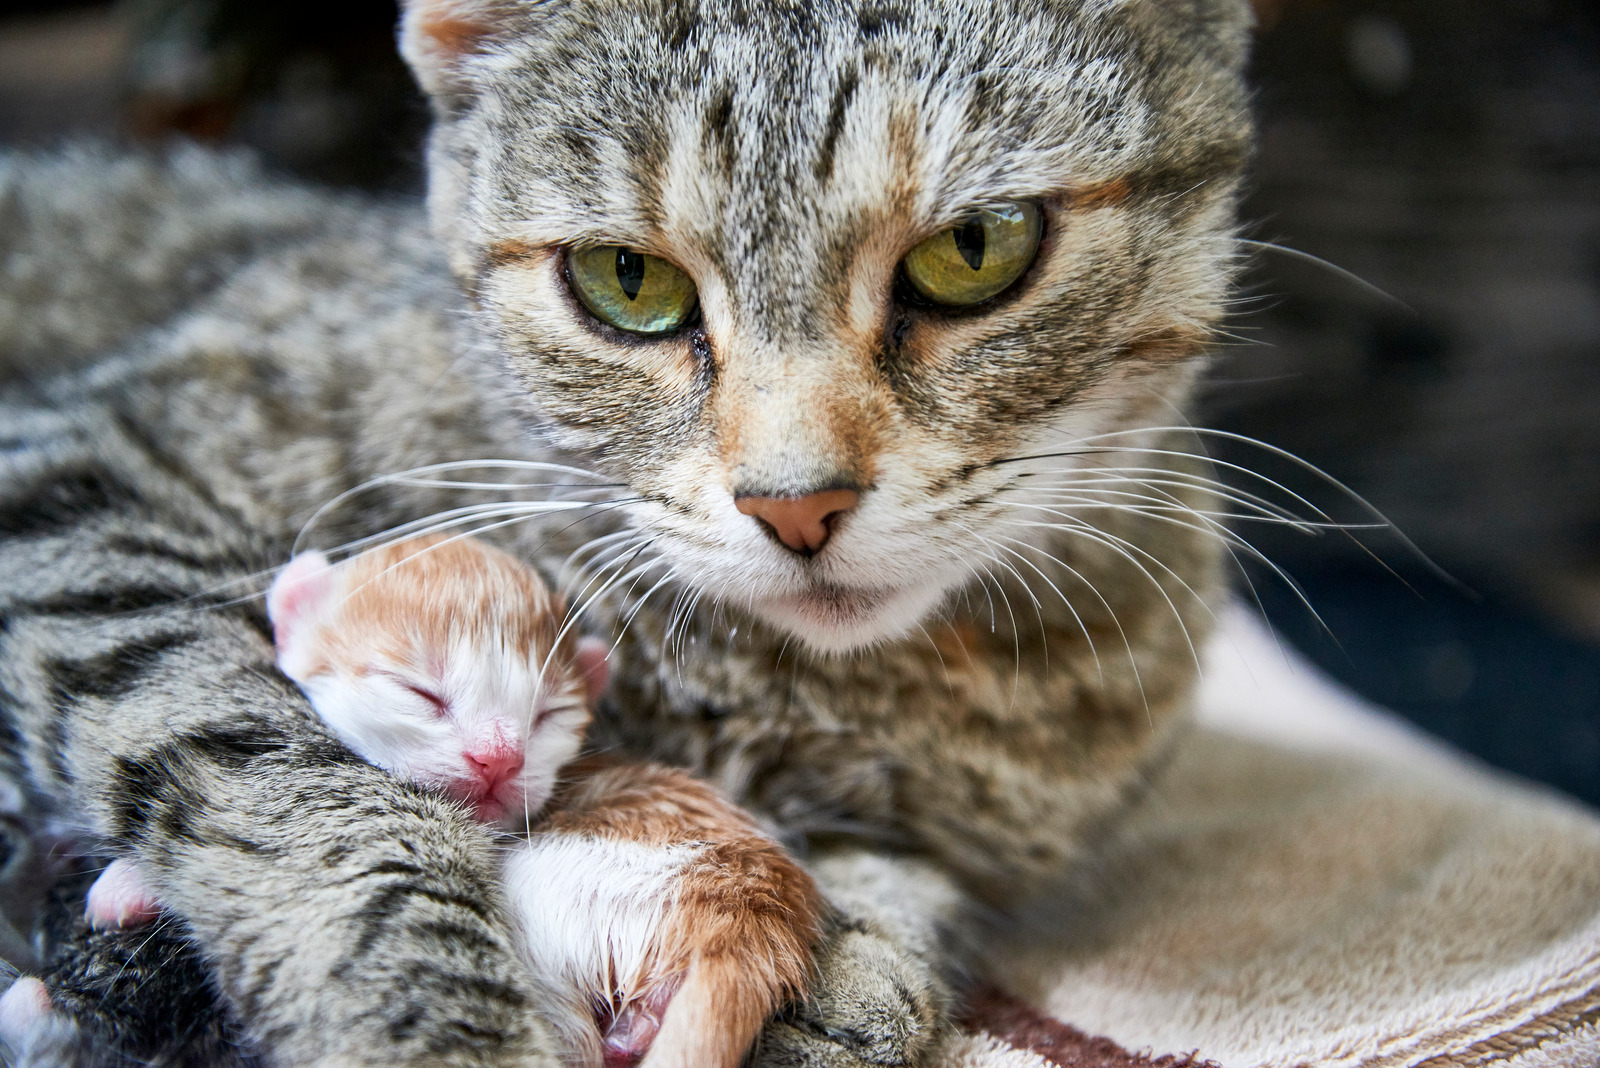 Bruine kat na bevalling met kitten